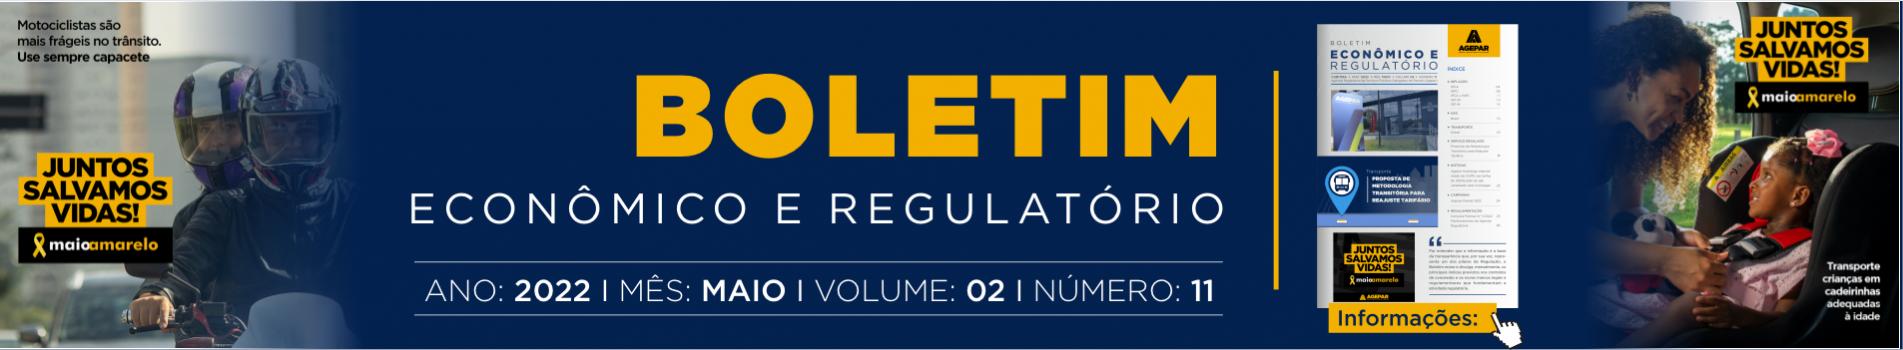 Boletim Econômico e Regulatório - Número 11 - Maio 2022